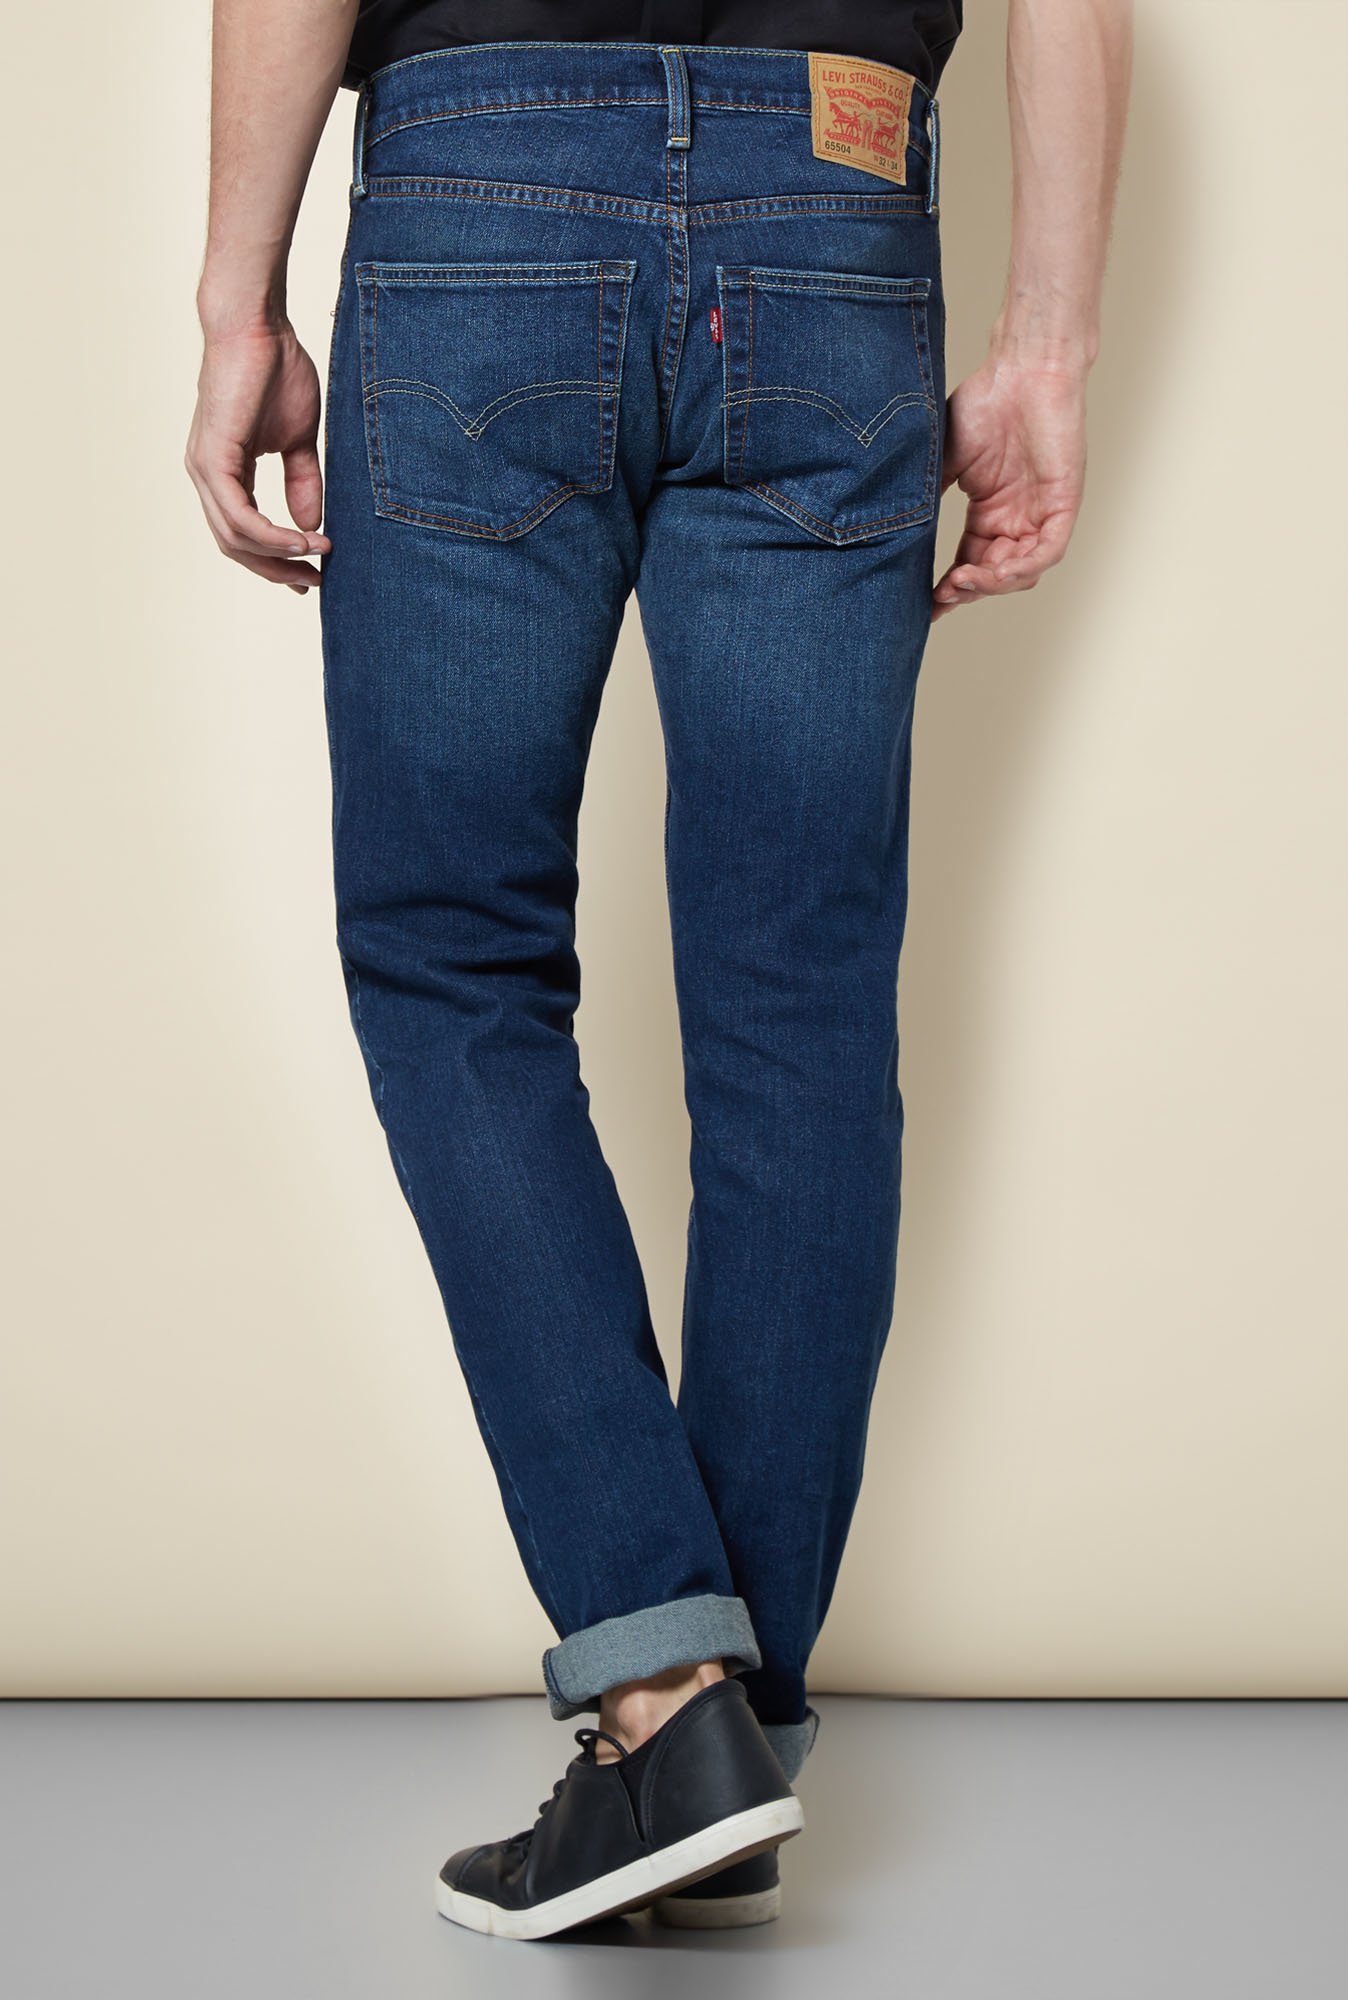 levis 65504 blue jeans